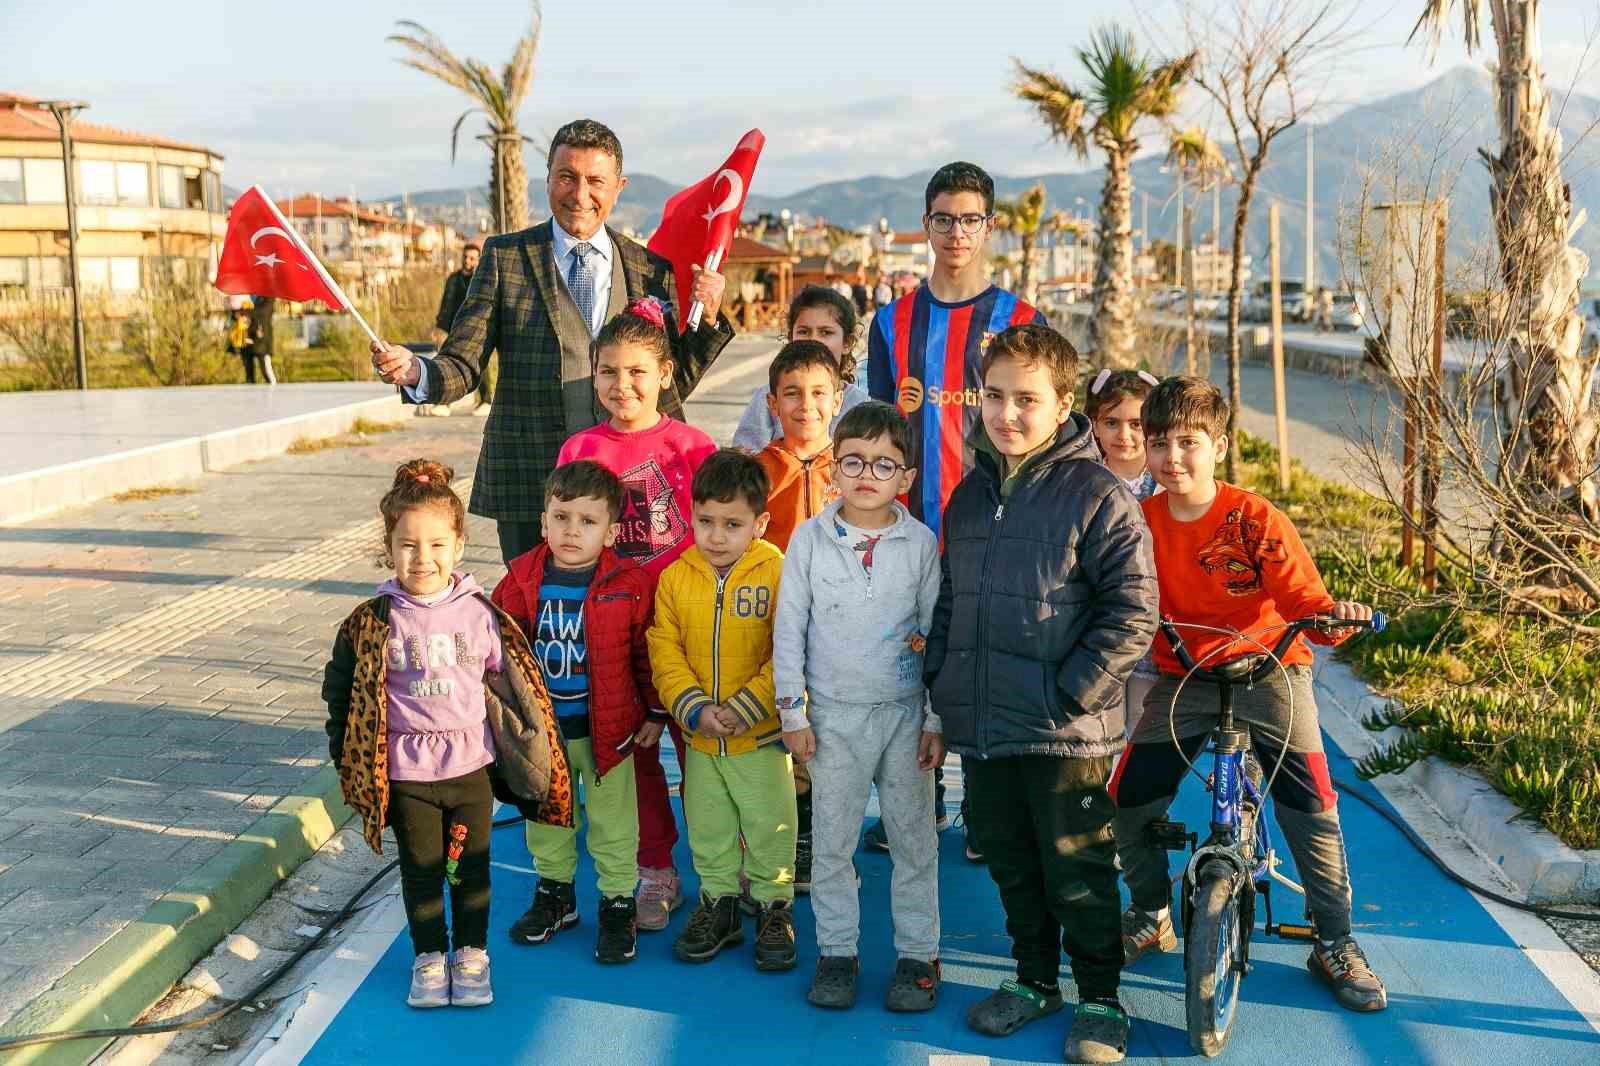 İYİ Parti Hatay Büyükşehir Belediye Başkan Adayı Nusret Cömert, depremde yıkılan şehrin yeniden inşası için "Hatay Yeniden" vizyonunu açıkladı.